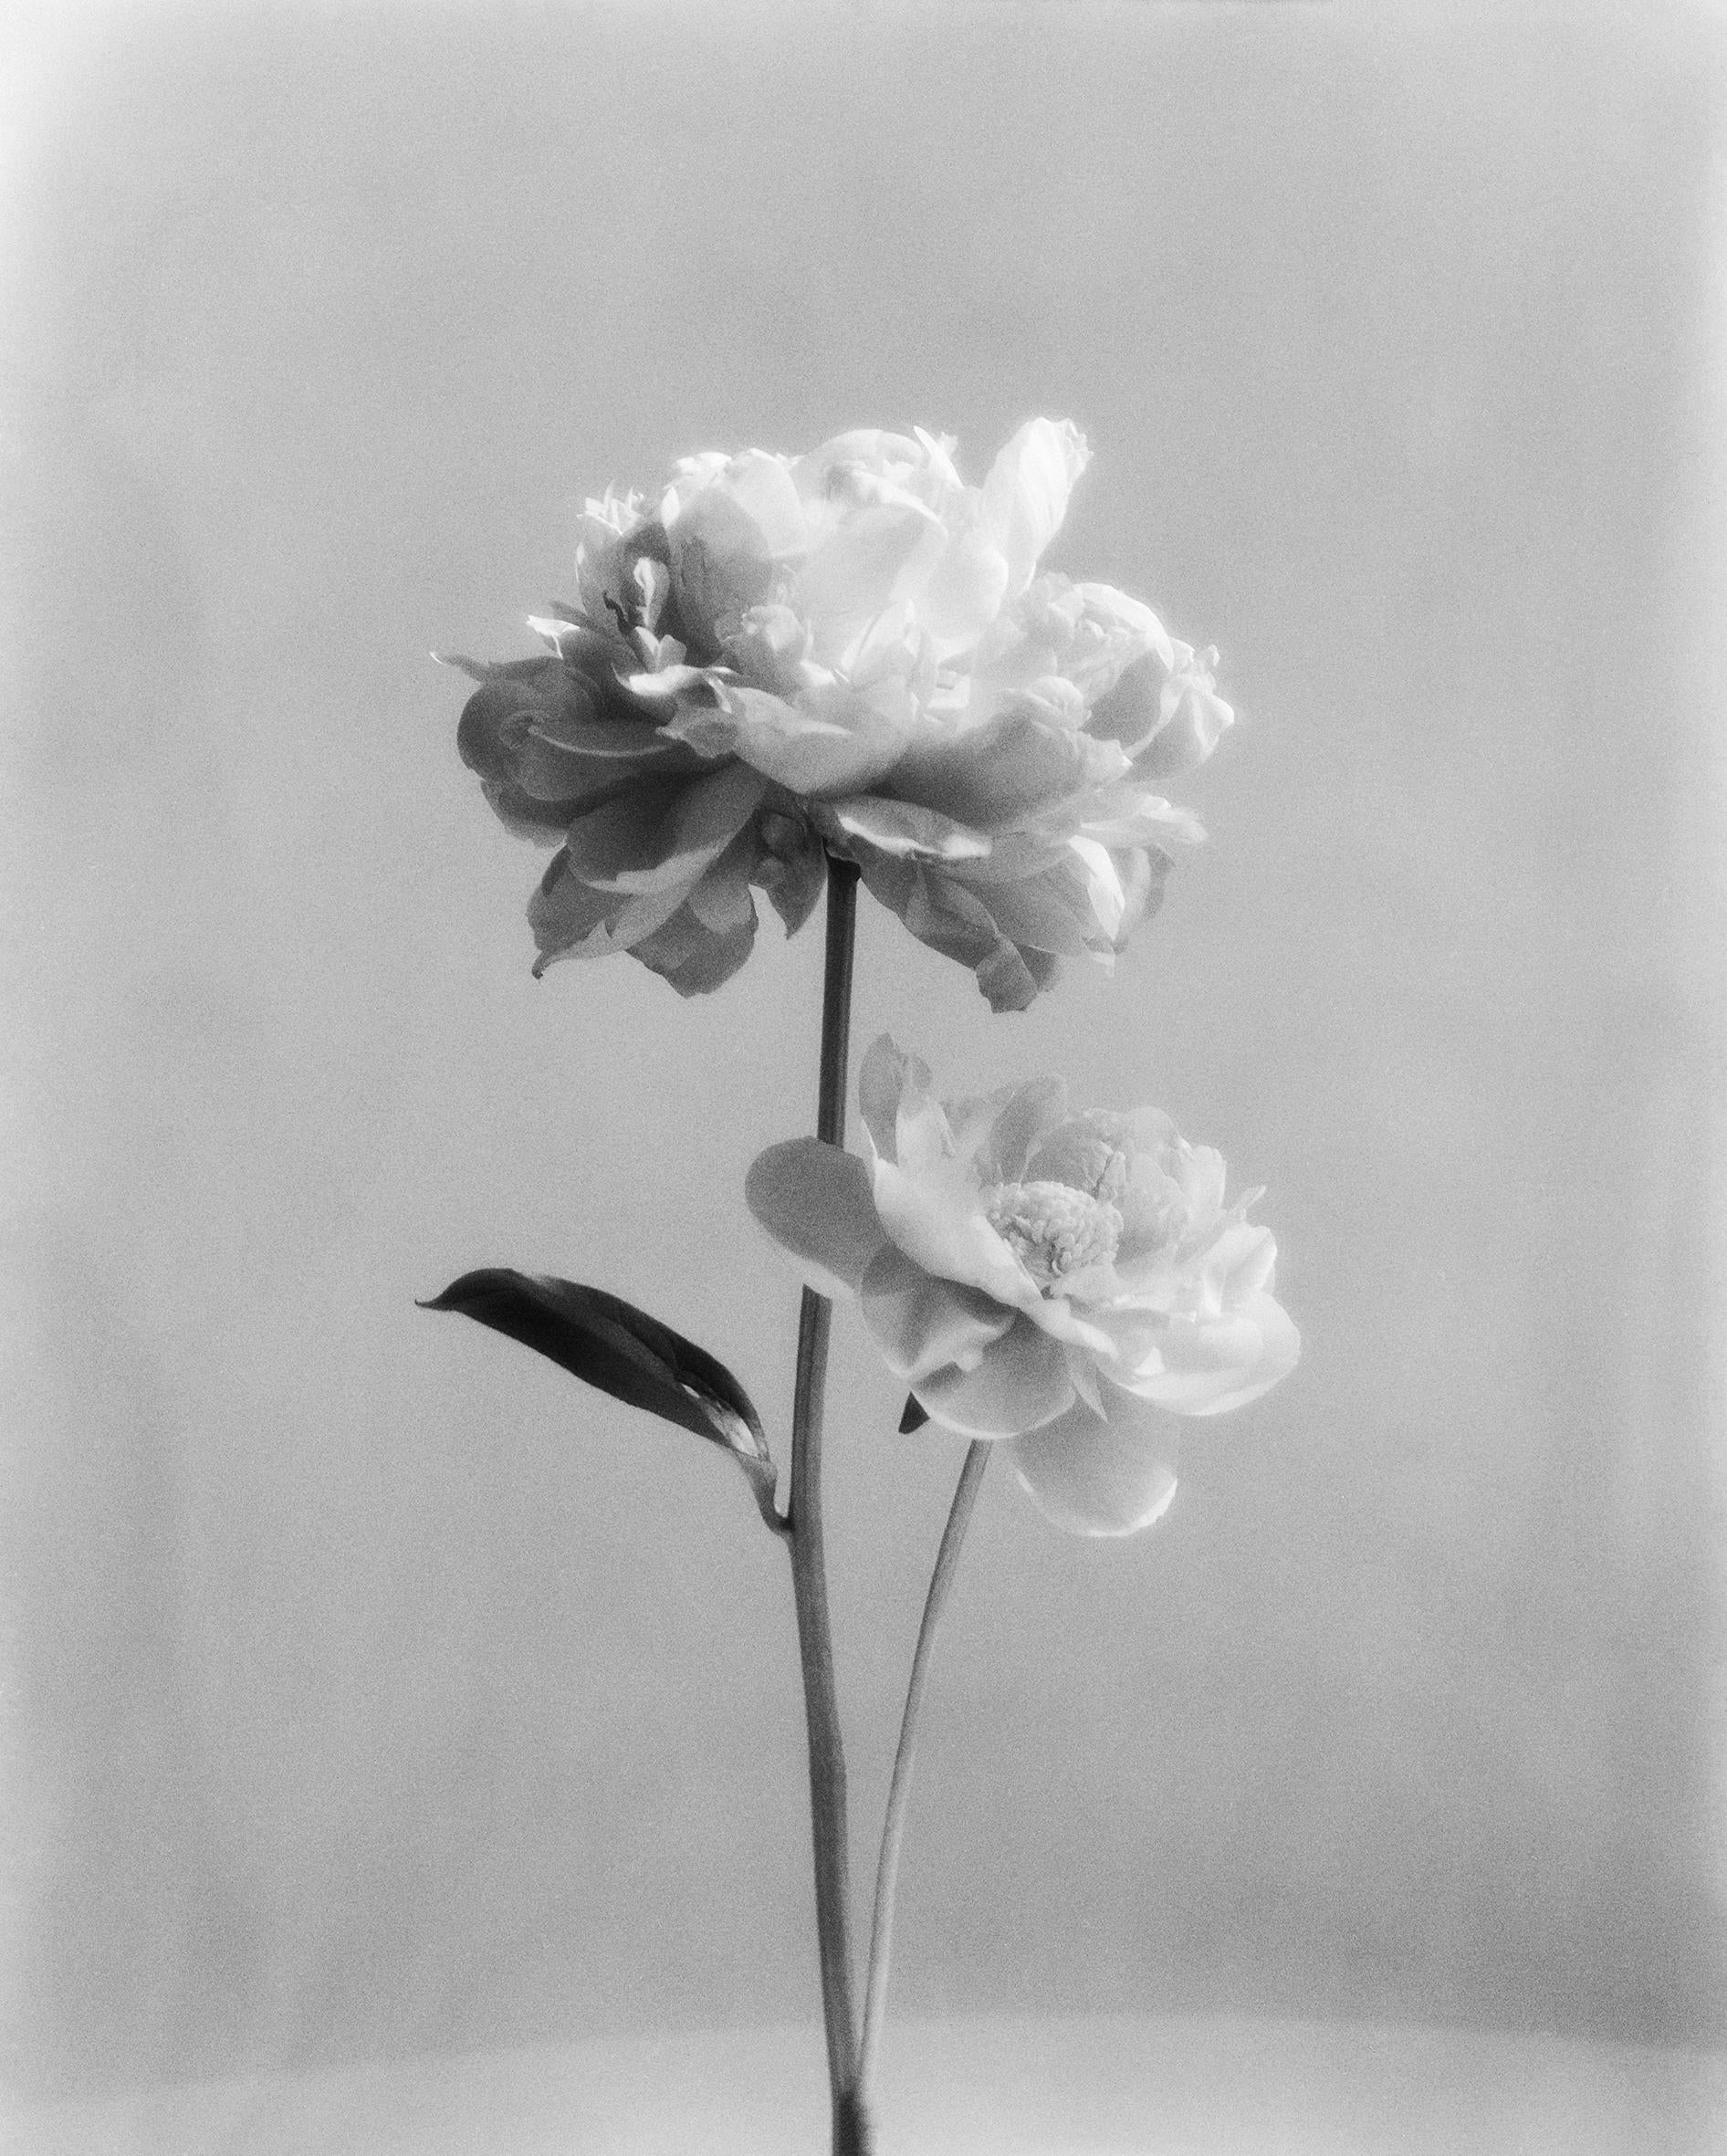 Black and White Photograph Ugne Pouwell - Pivoine n°2 - photographie florale analogique en noir et blanc, édition limitée à 15 exemplaires